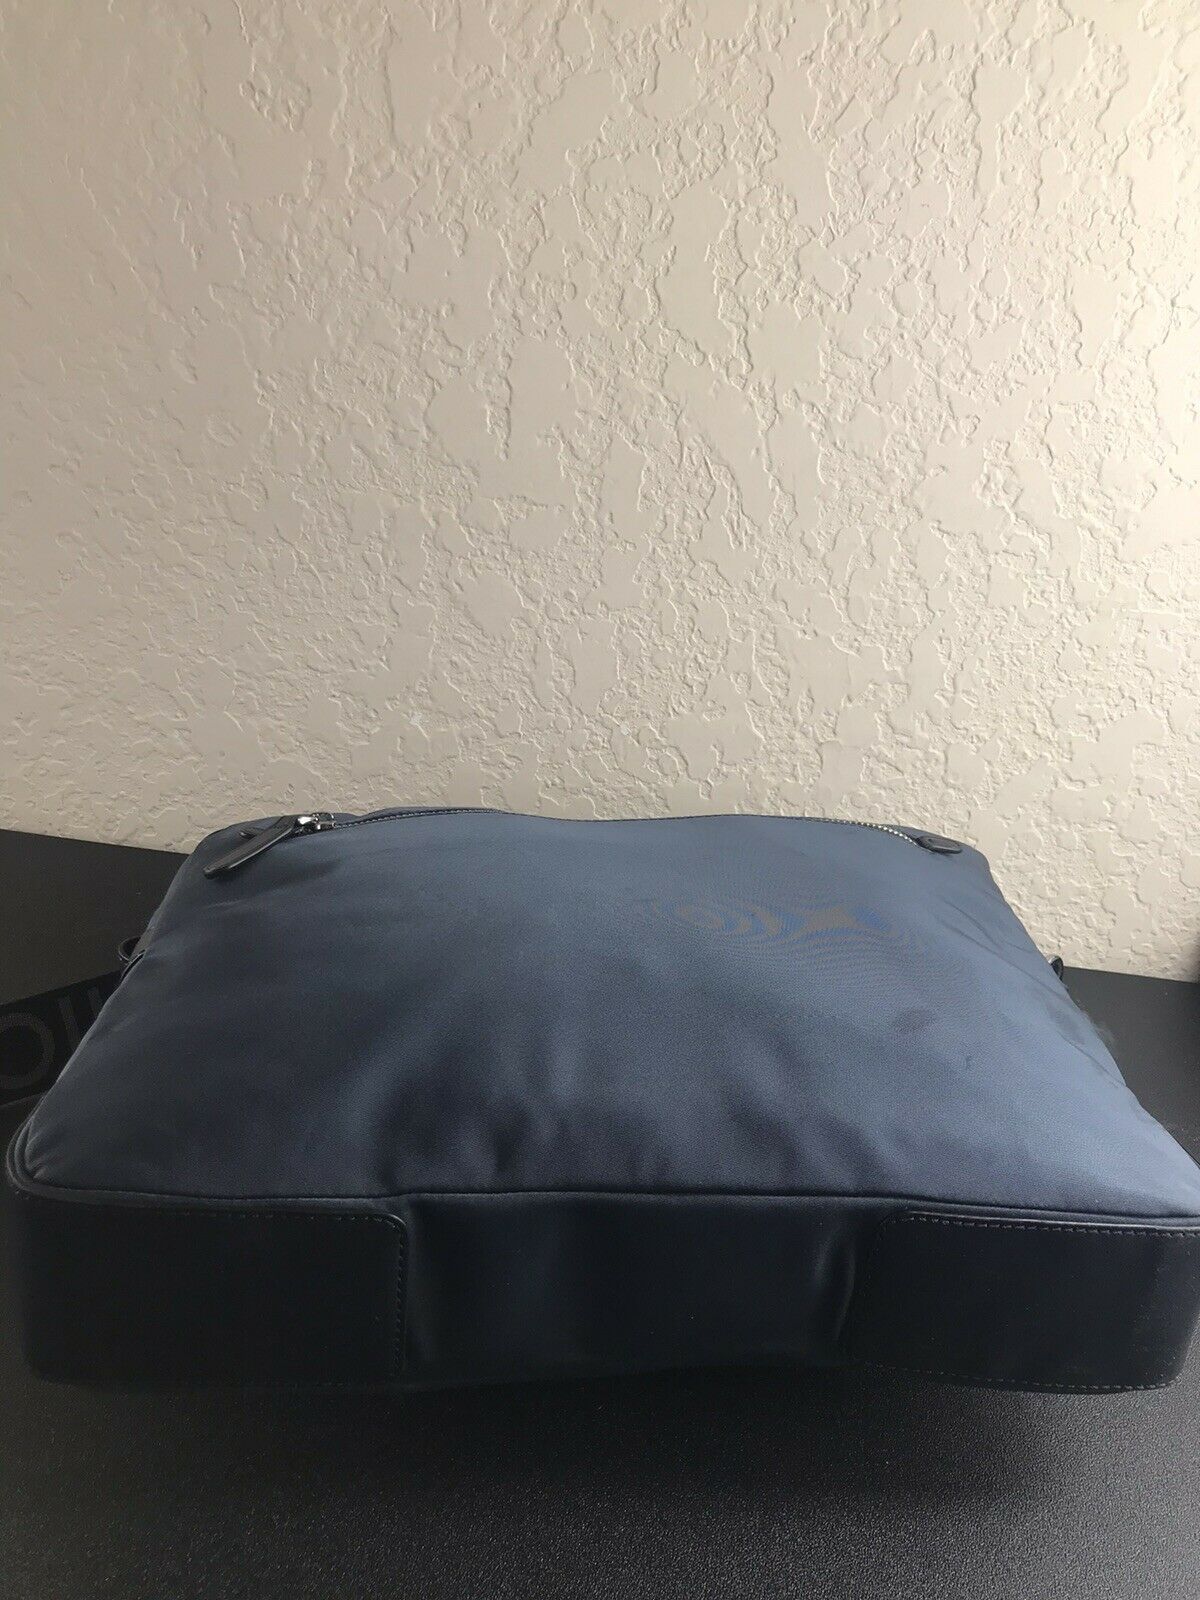 Michael Kors shoulder bag blue